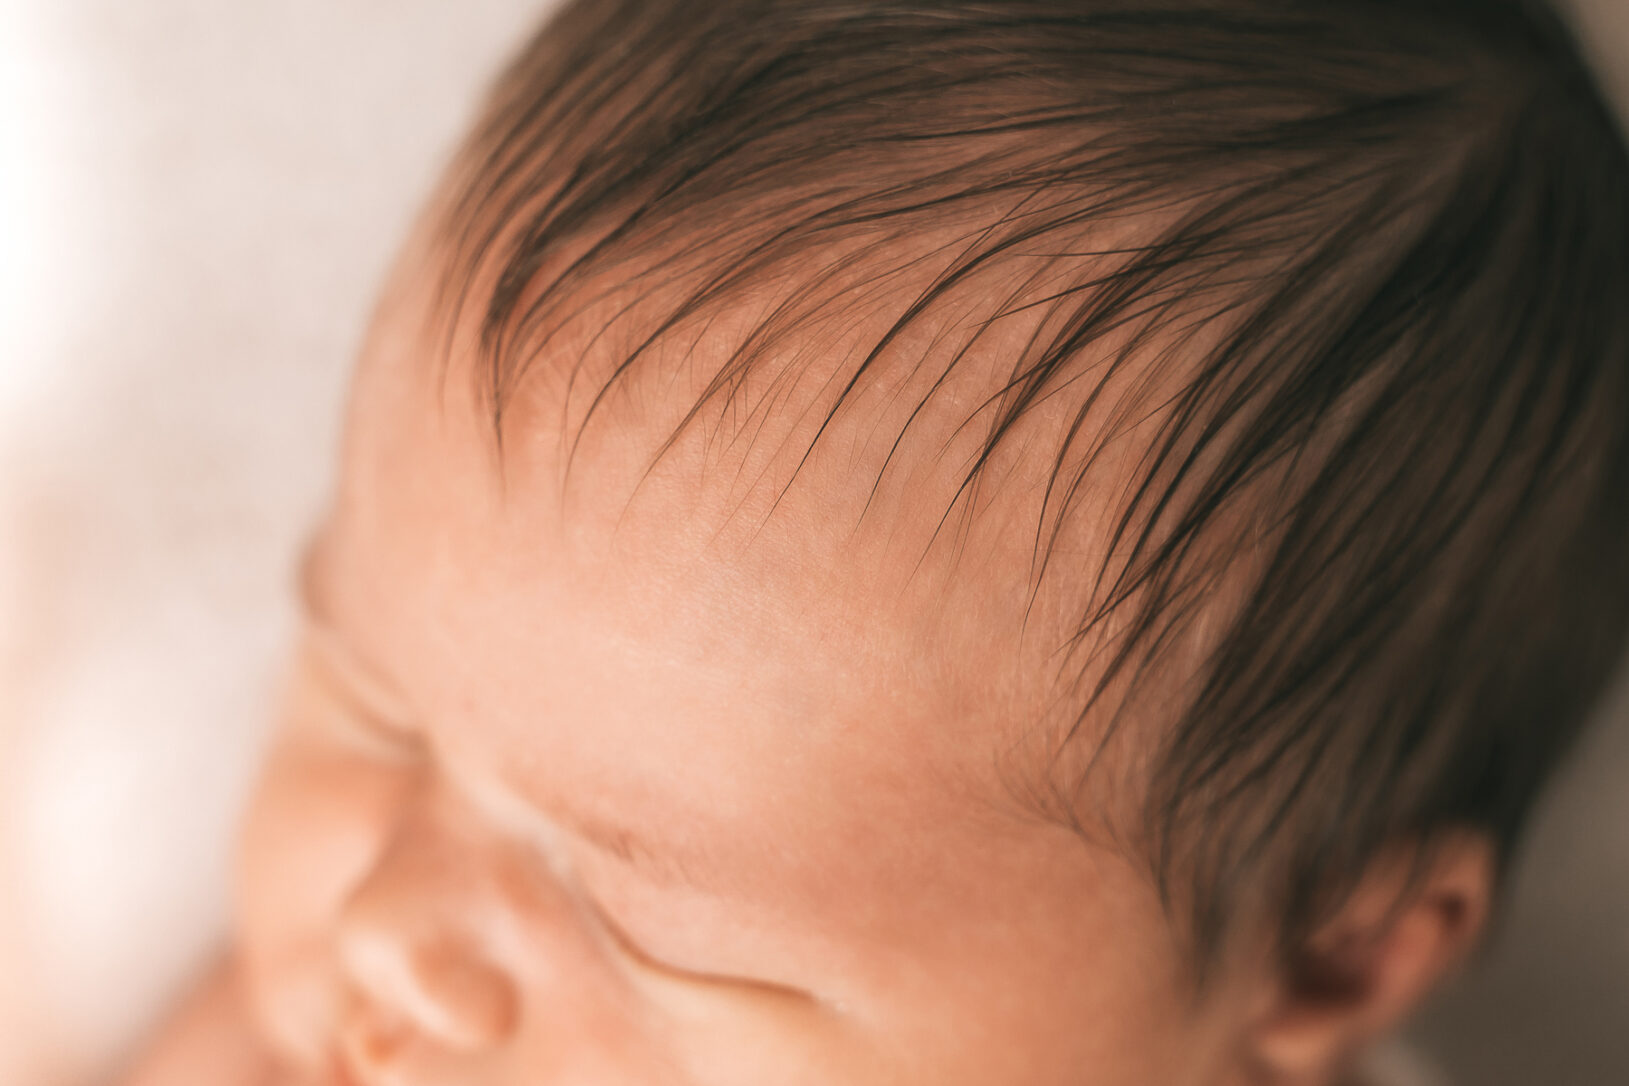 Detailaufnahmen der Haare des Mädchens bei einer Fotosession mit einem Neugeborenen